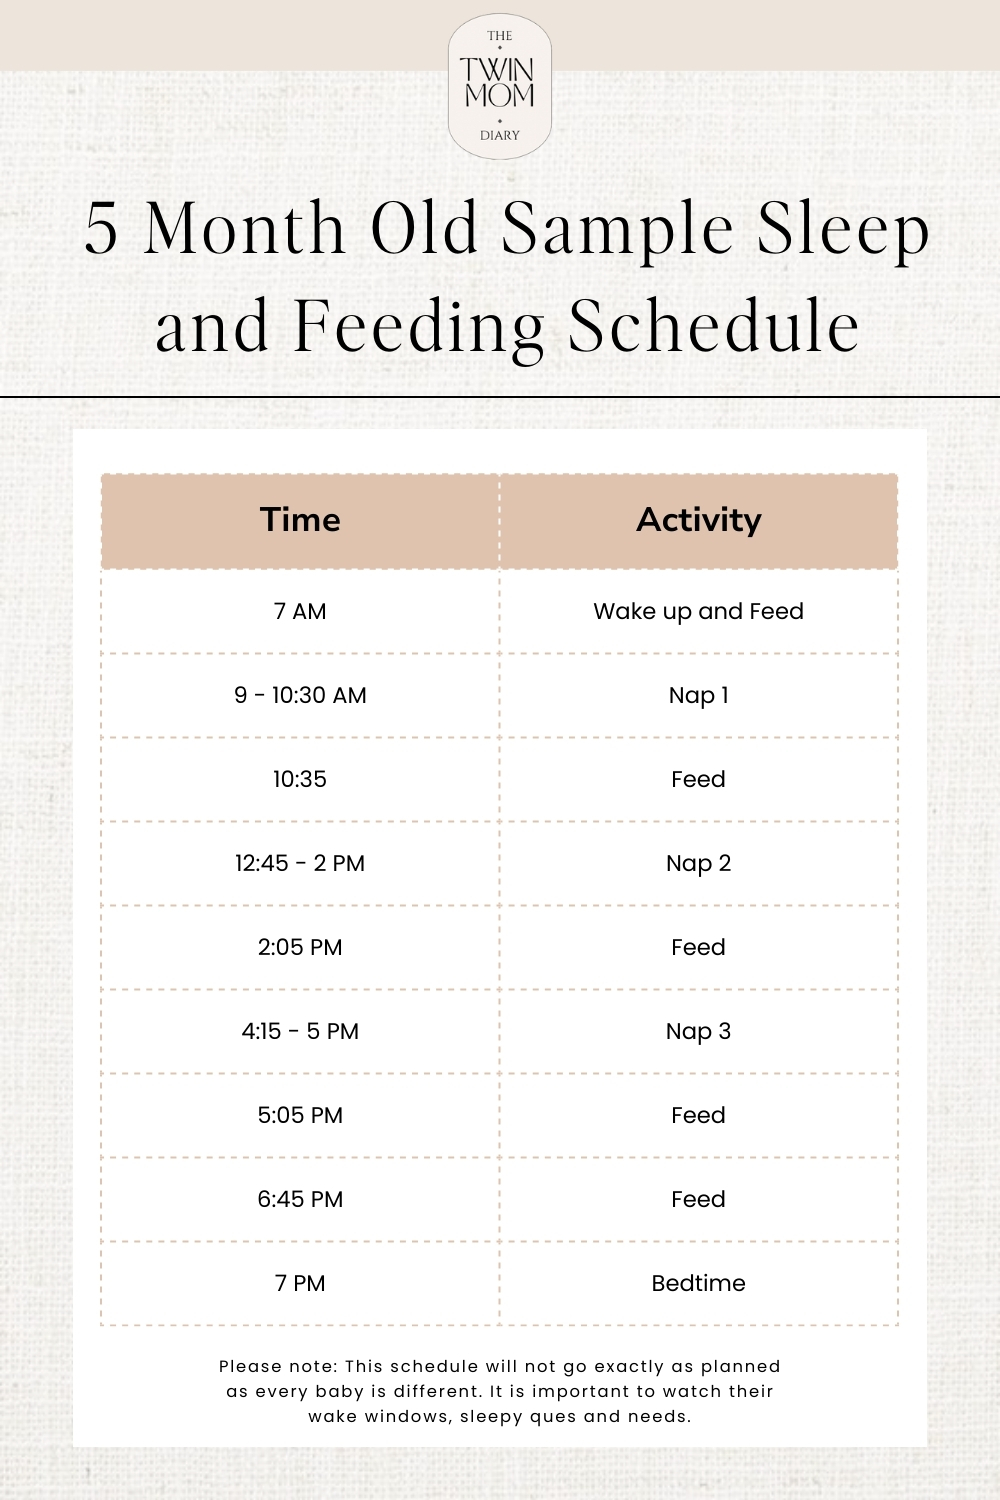 5 month old schedule, 5 month old sleep schedule, sleep schedule for 5 month old, 5 month old wake window, 5 month old feeding schedule